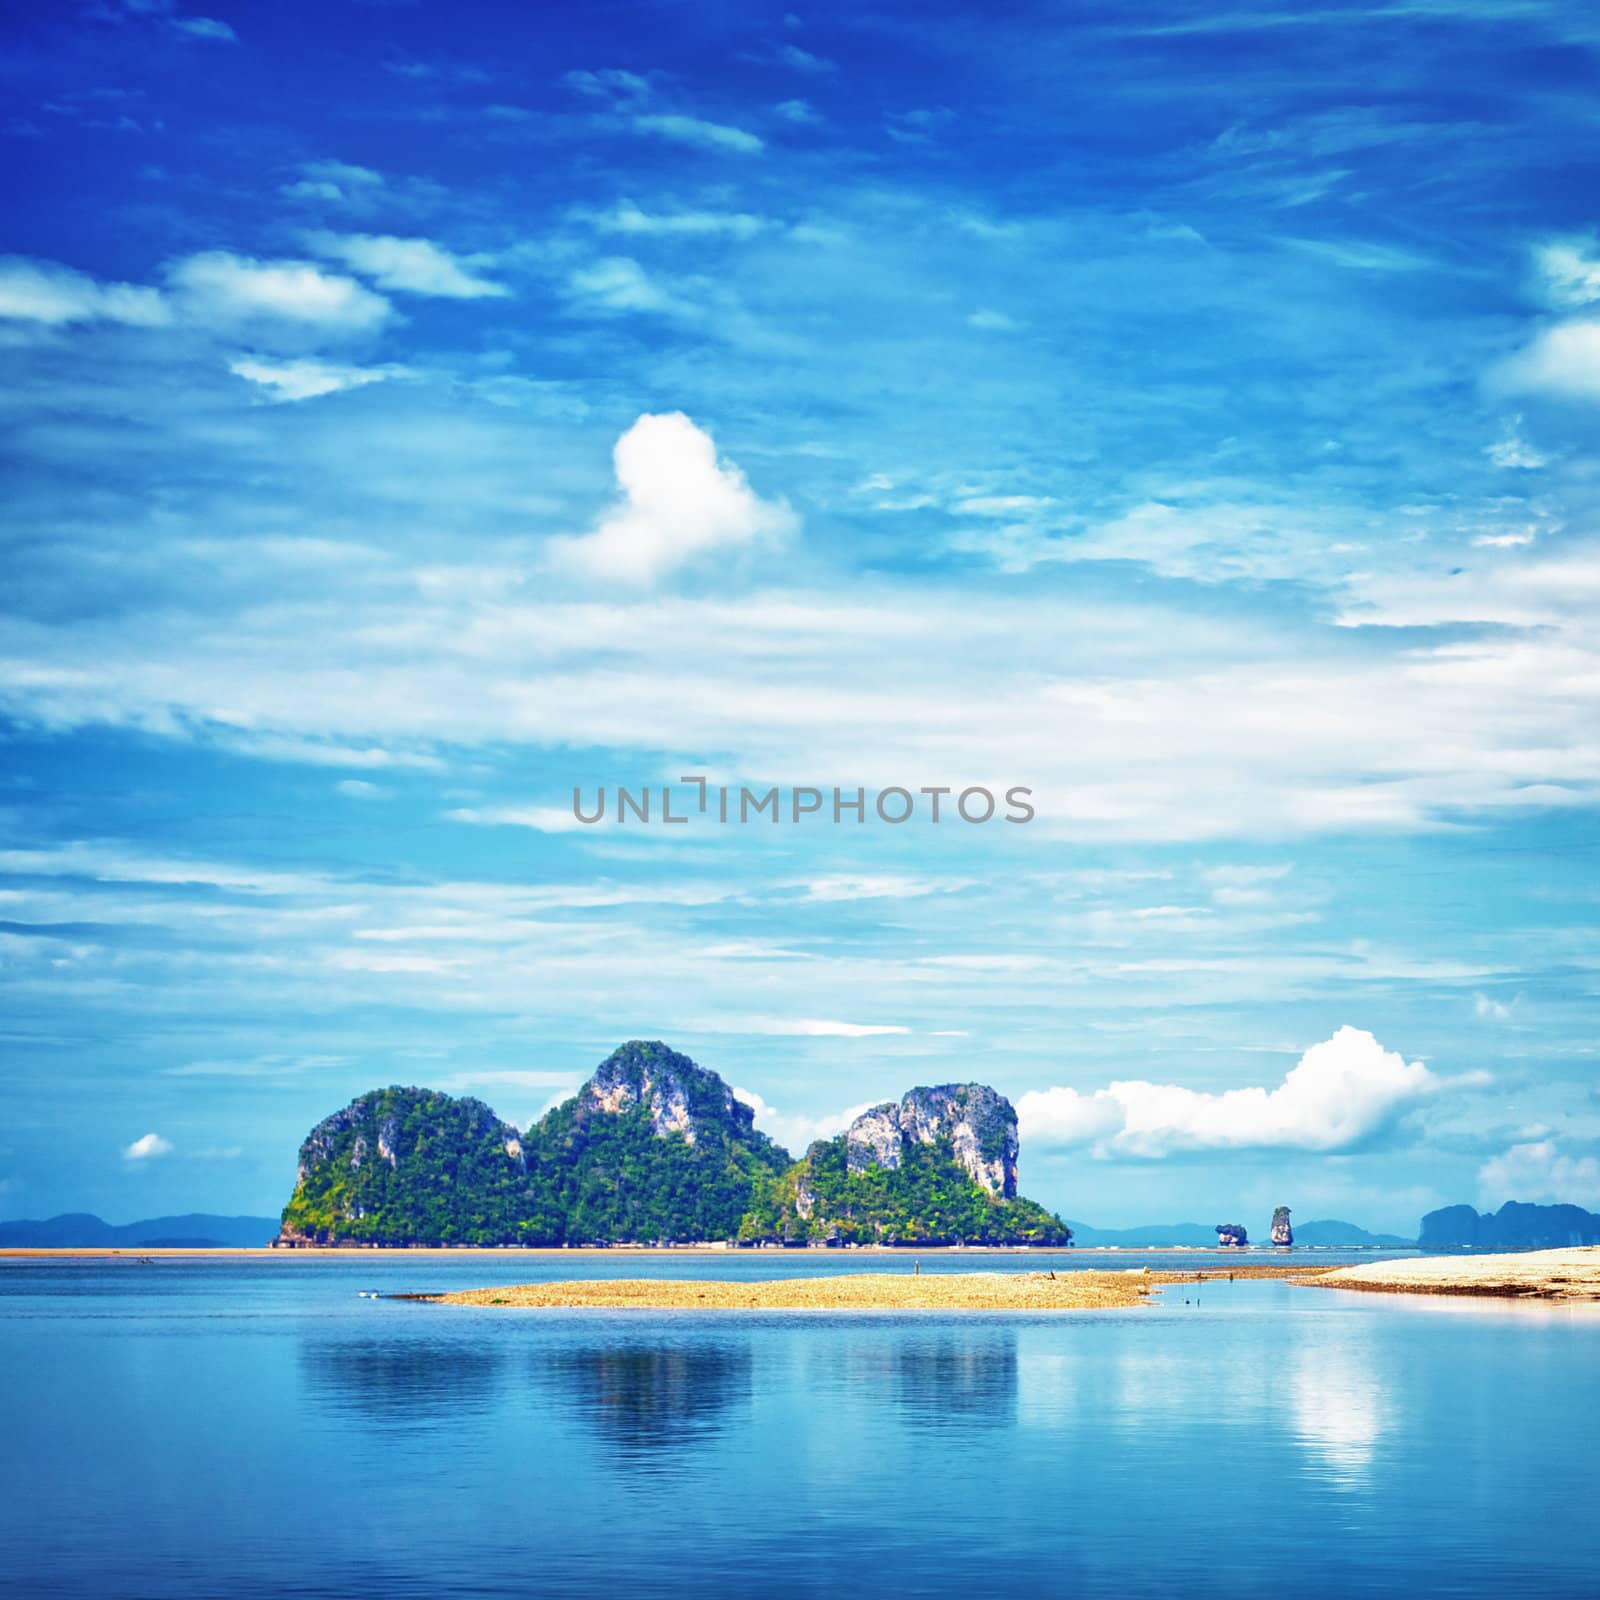 seashore with tall rocks, Andaman Sea, Thailand